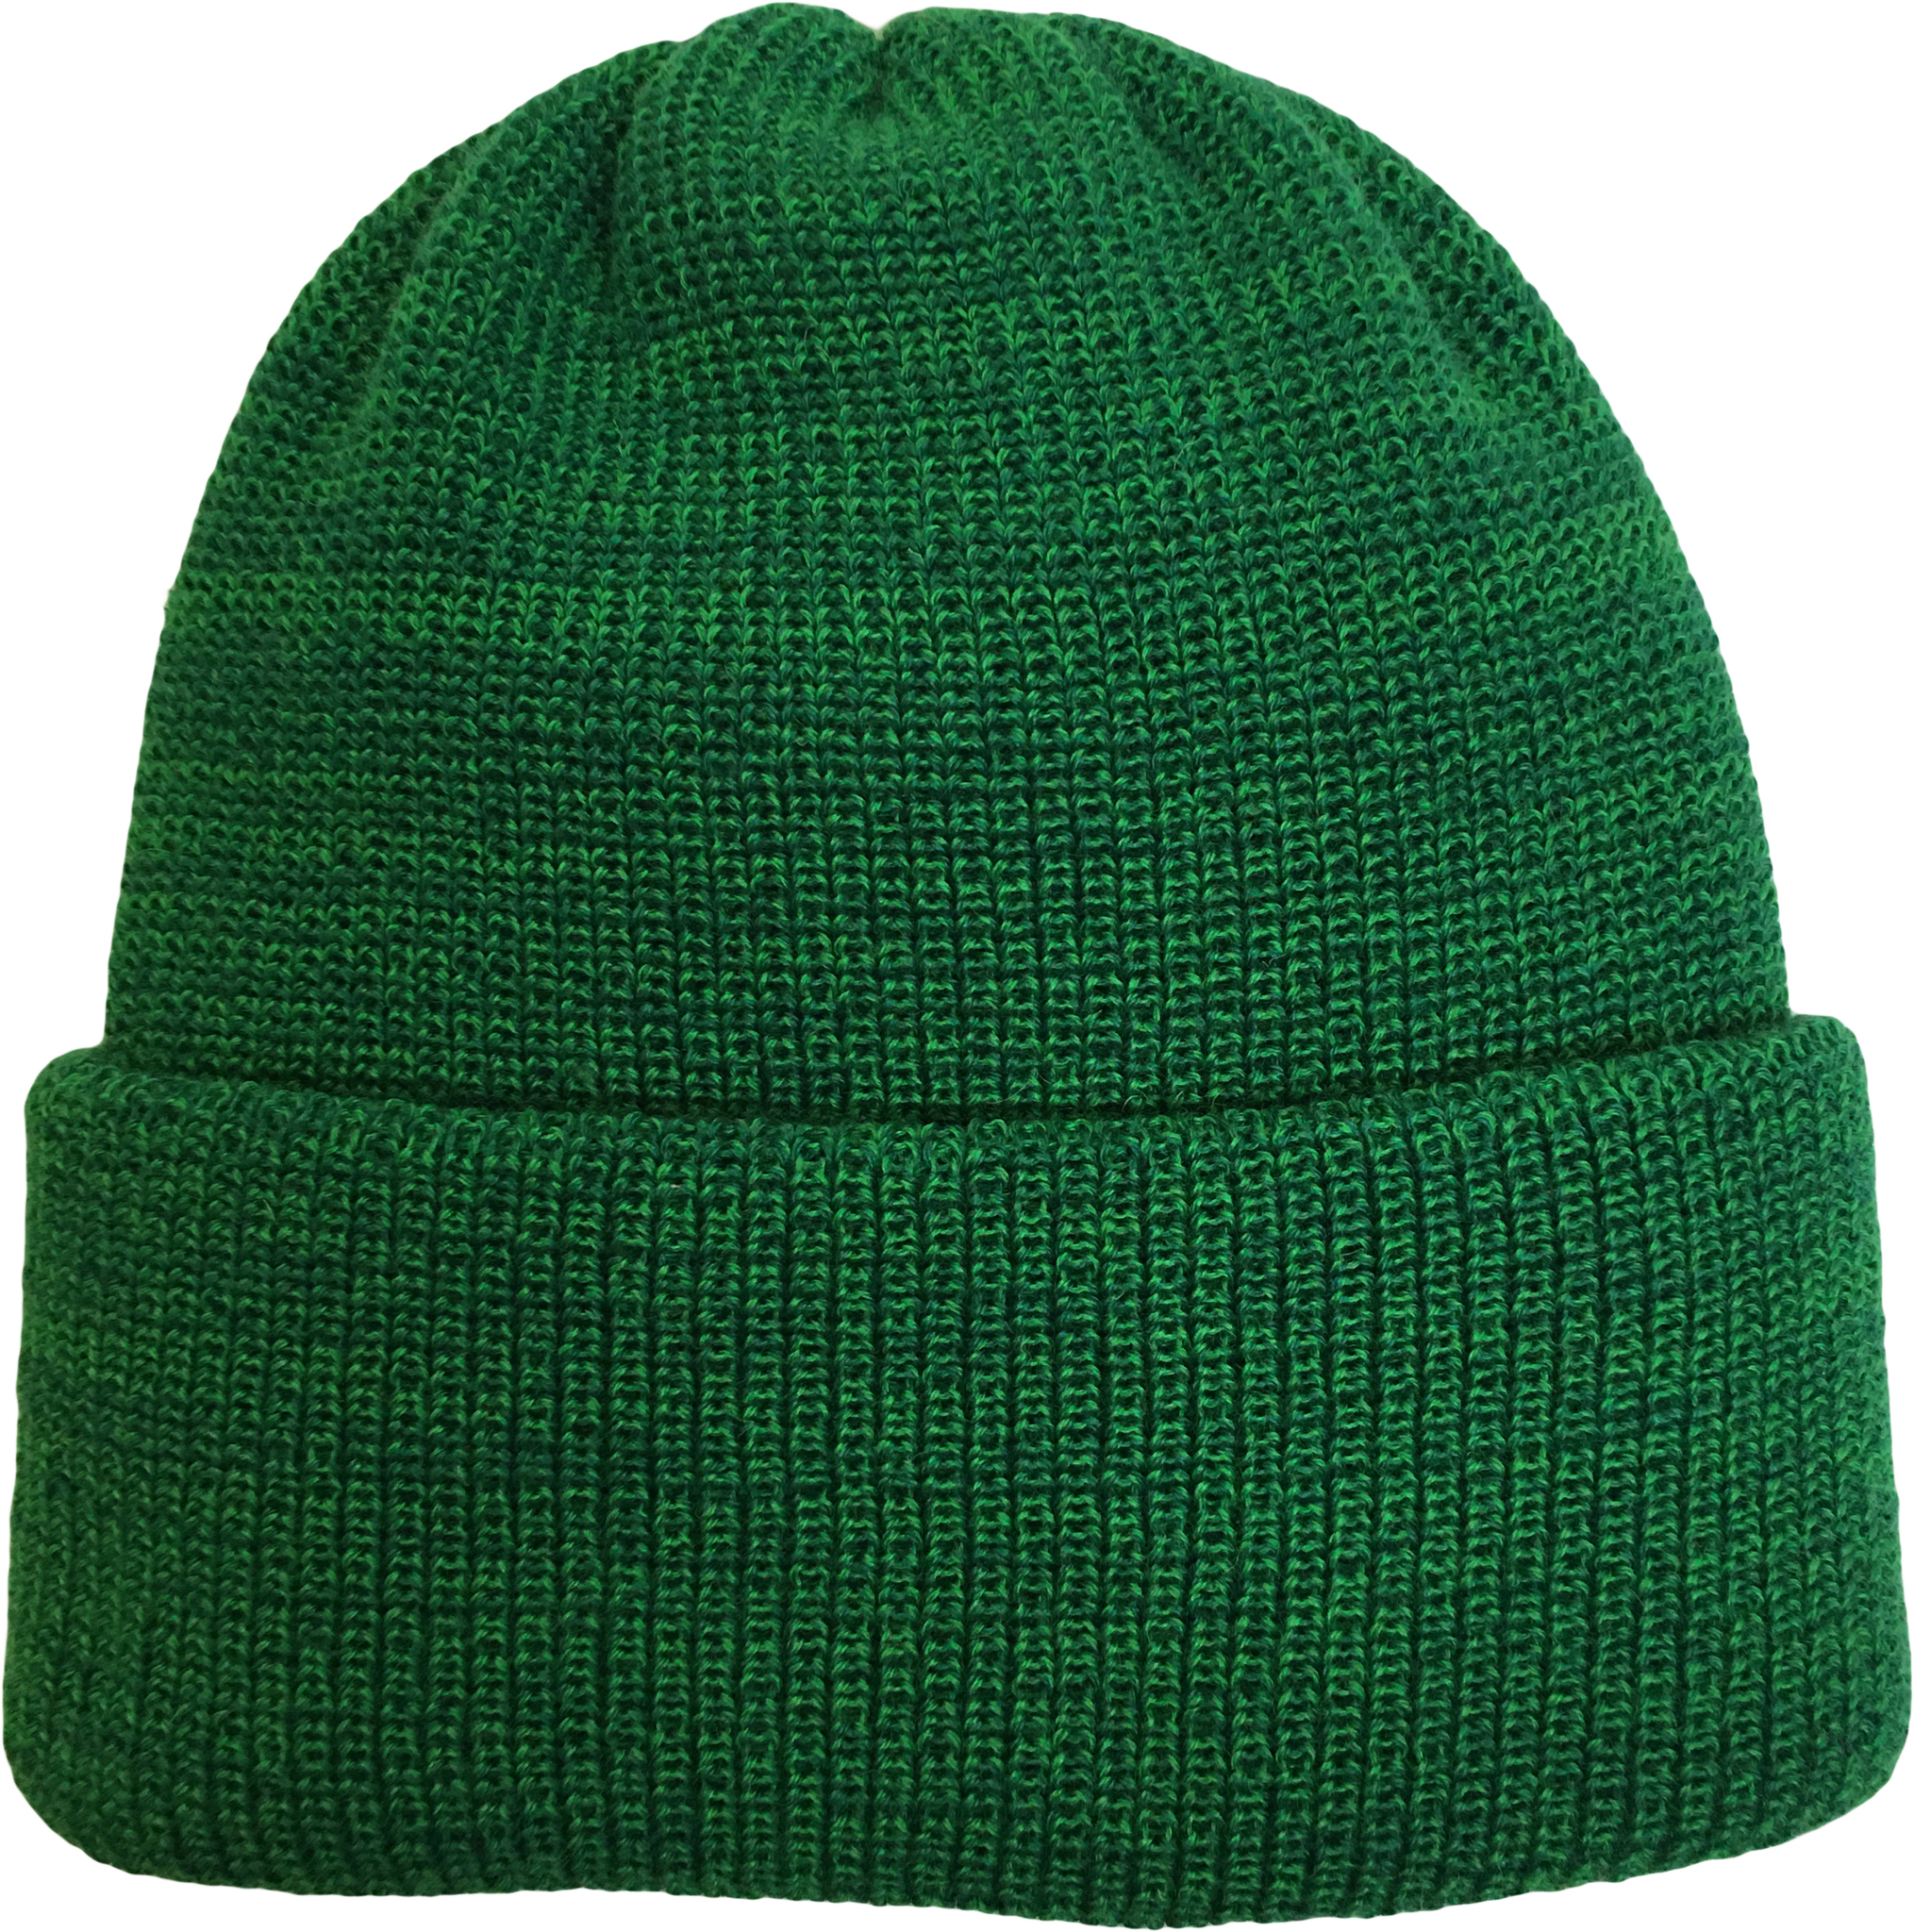 Самый унизительный подарок для китайца – зеленая шапка